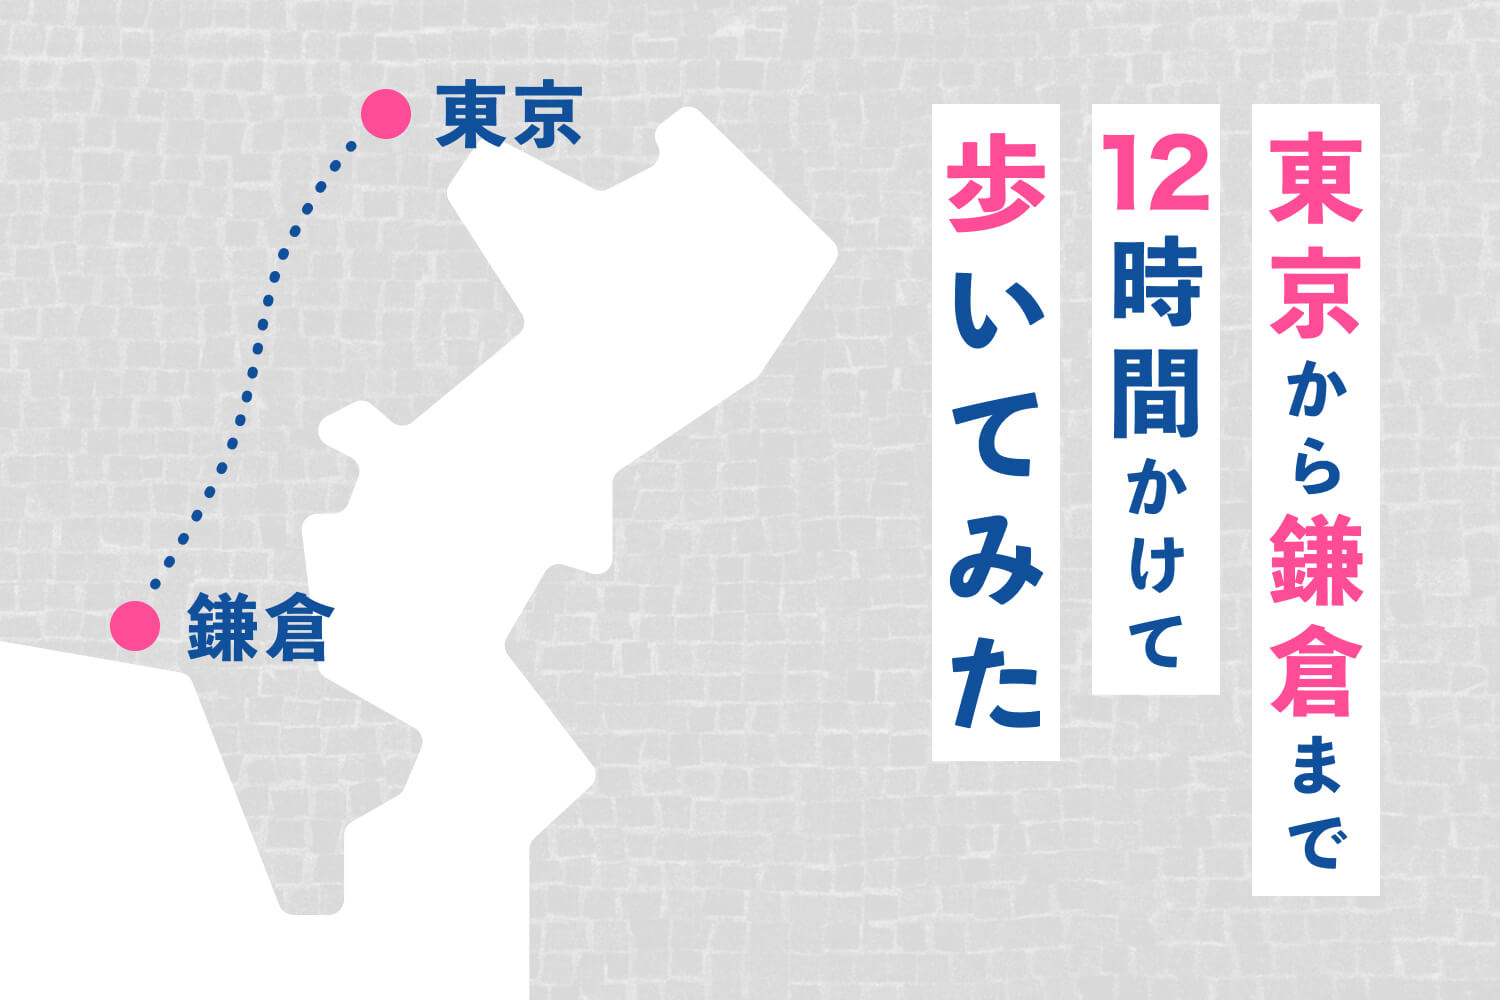 【1日50km】東京から鎌倉まで12時間かけて歩いてみた